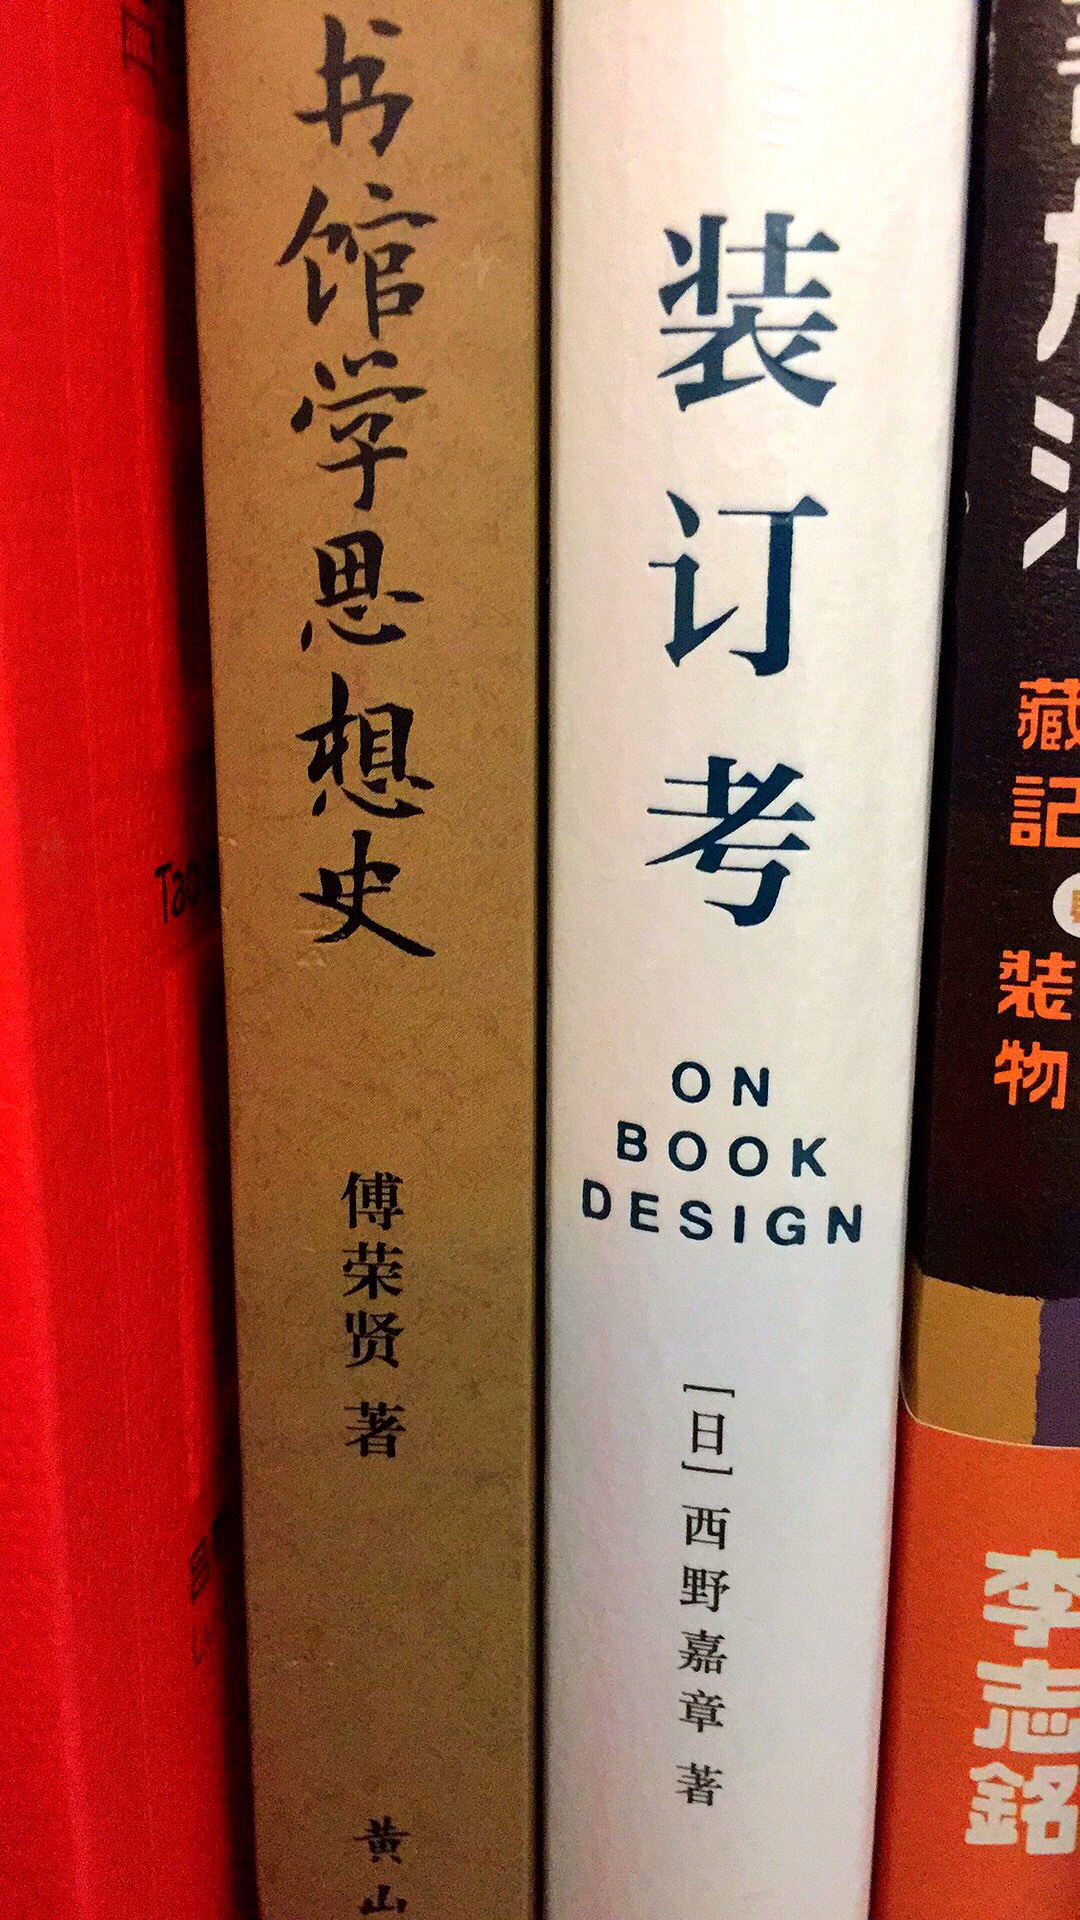 在北京的三联韬奋书店发现的有关书籍装订的作品，一直在关注了，活动购入不后悔。